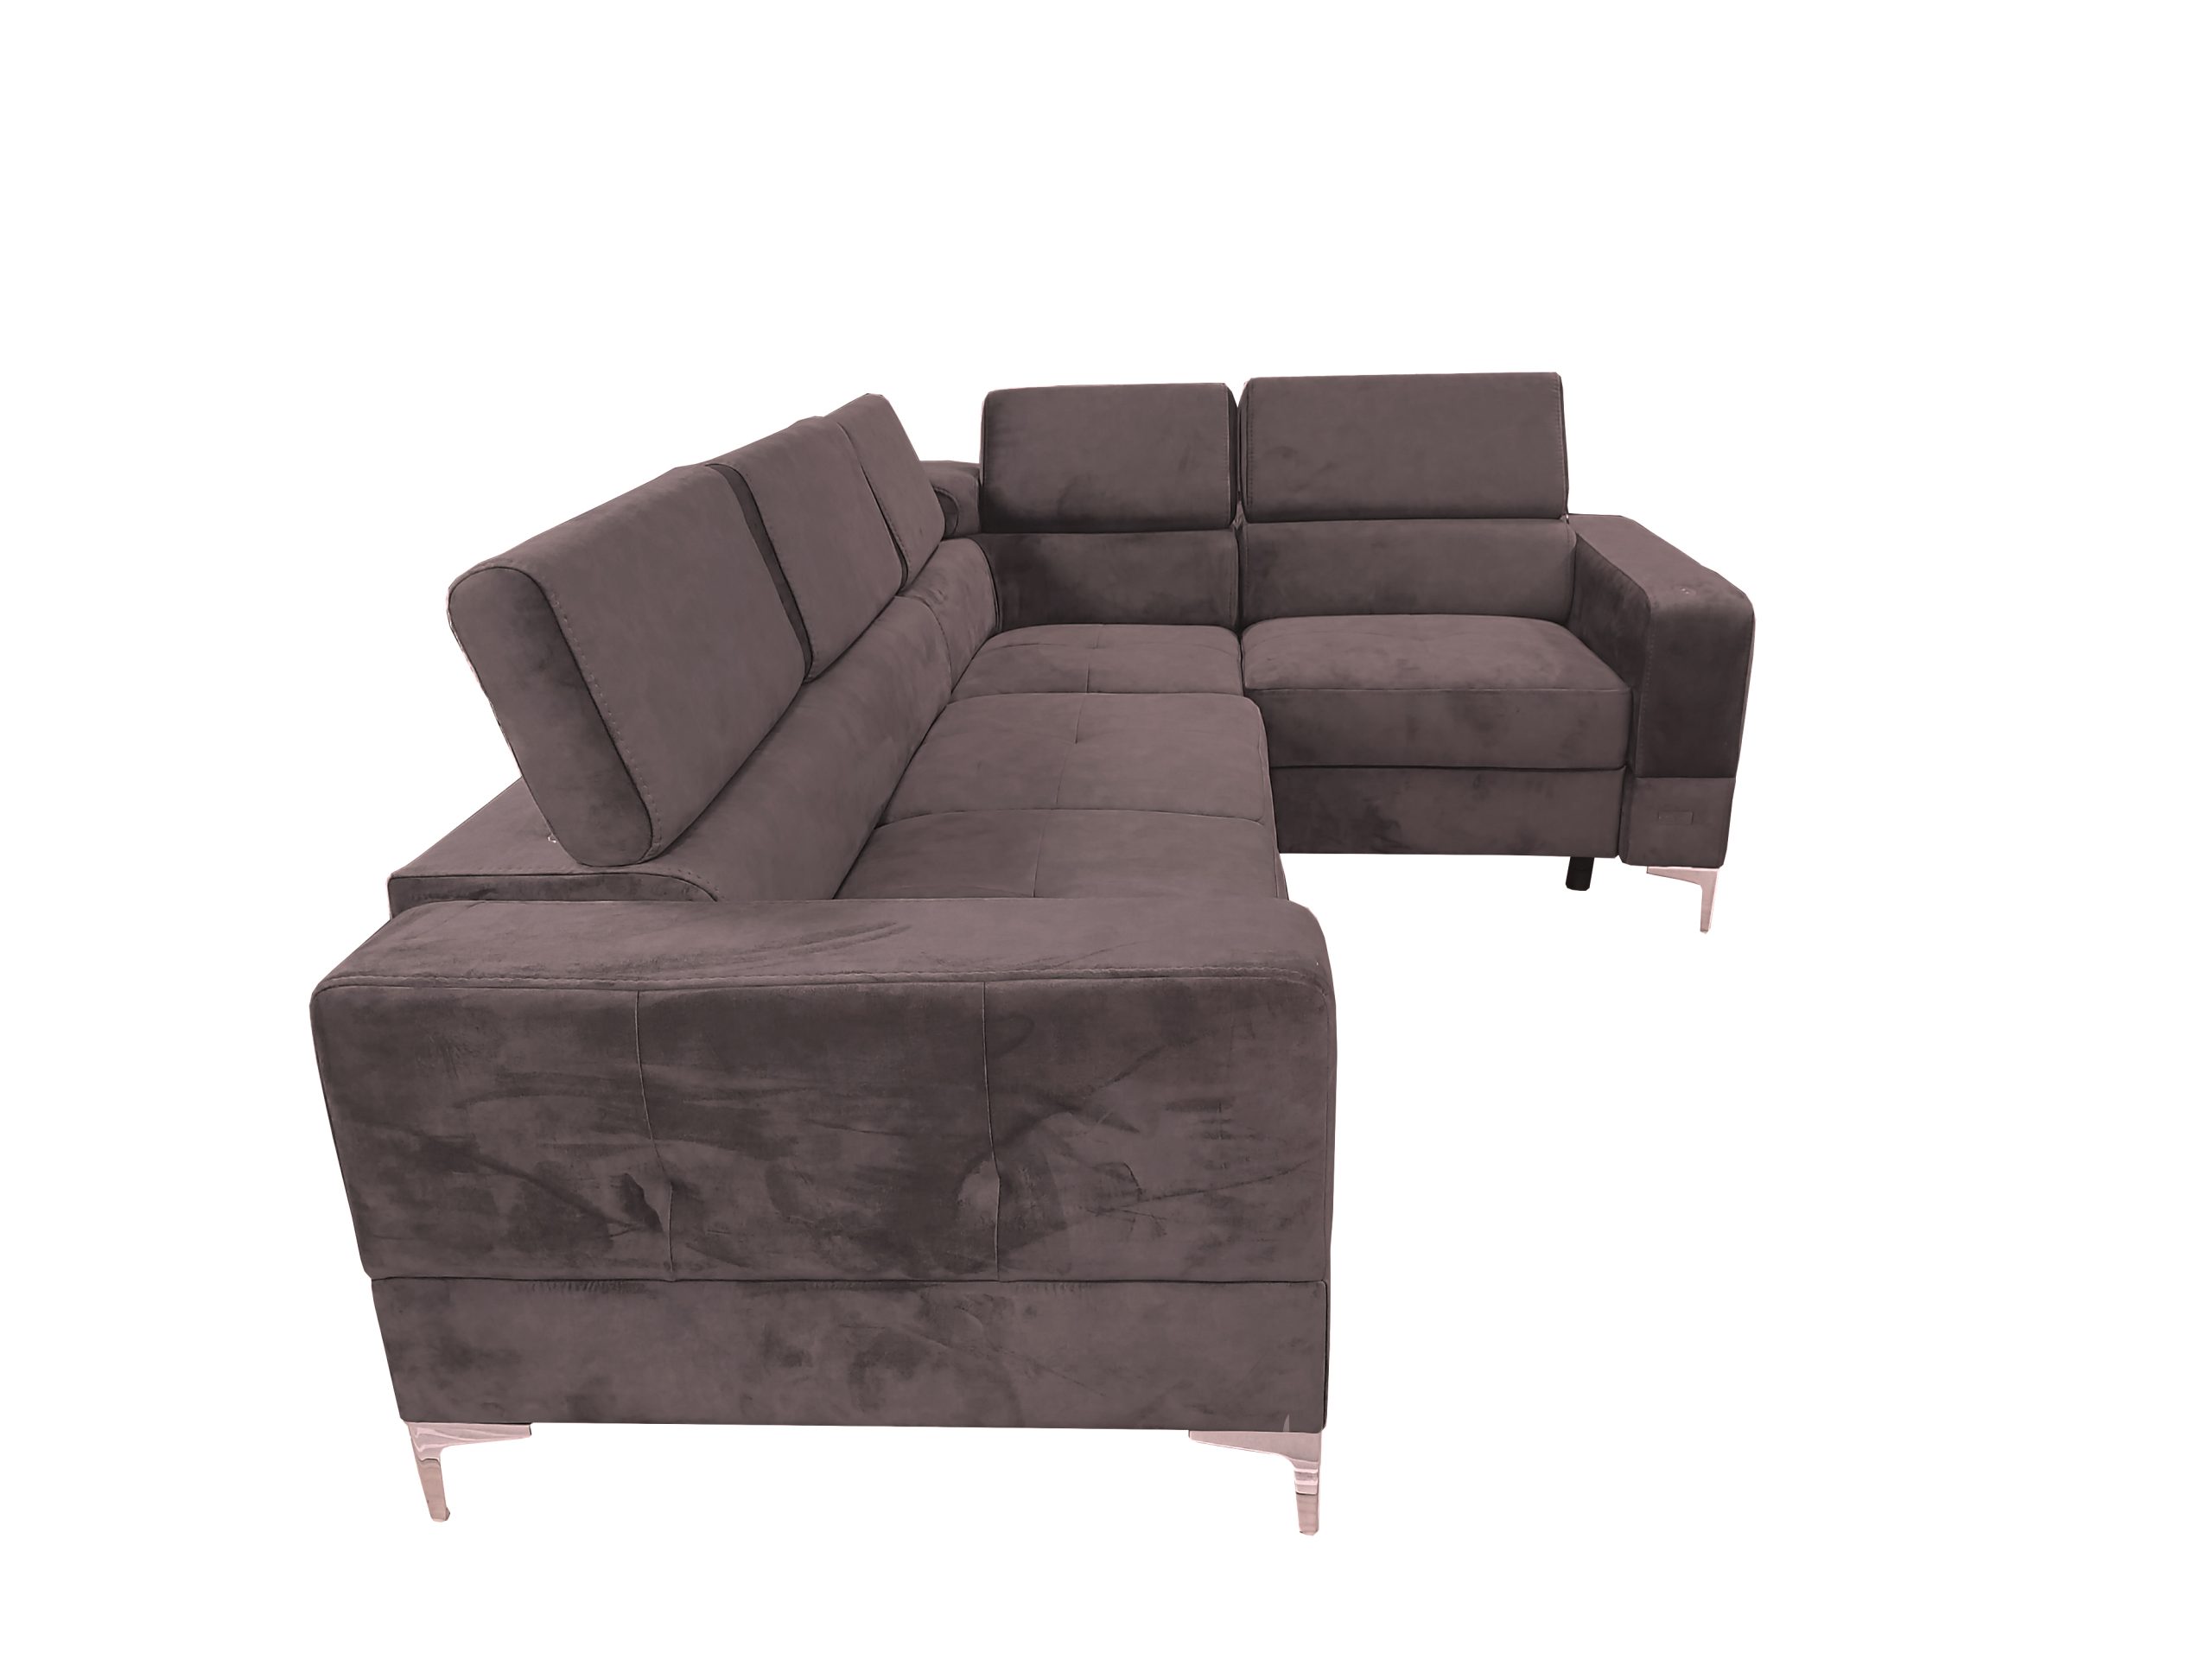 Stūra dīvāns ar relaksācijas funkciju "TOSCANIA RELAX" Lab.